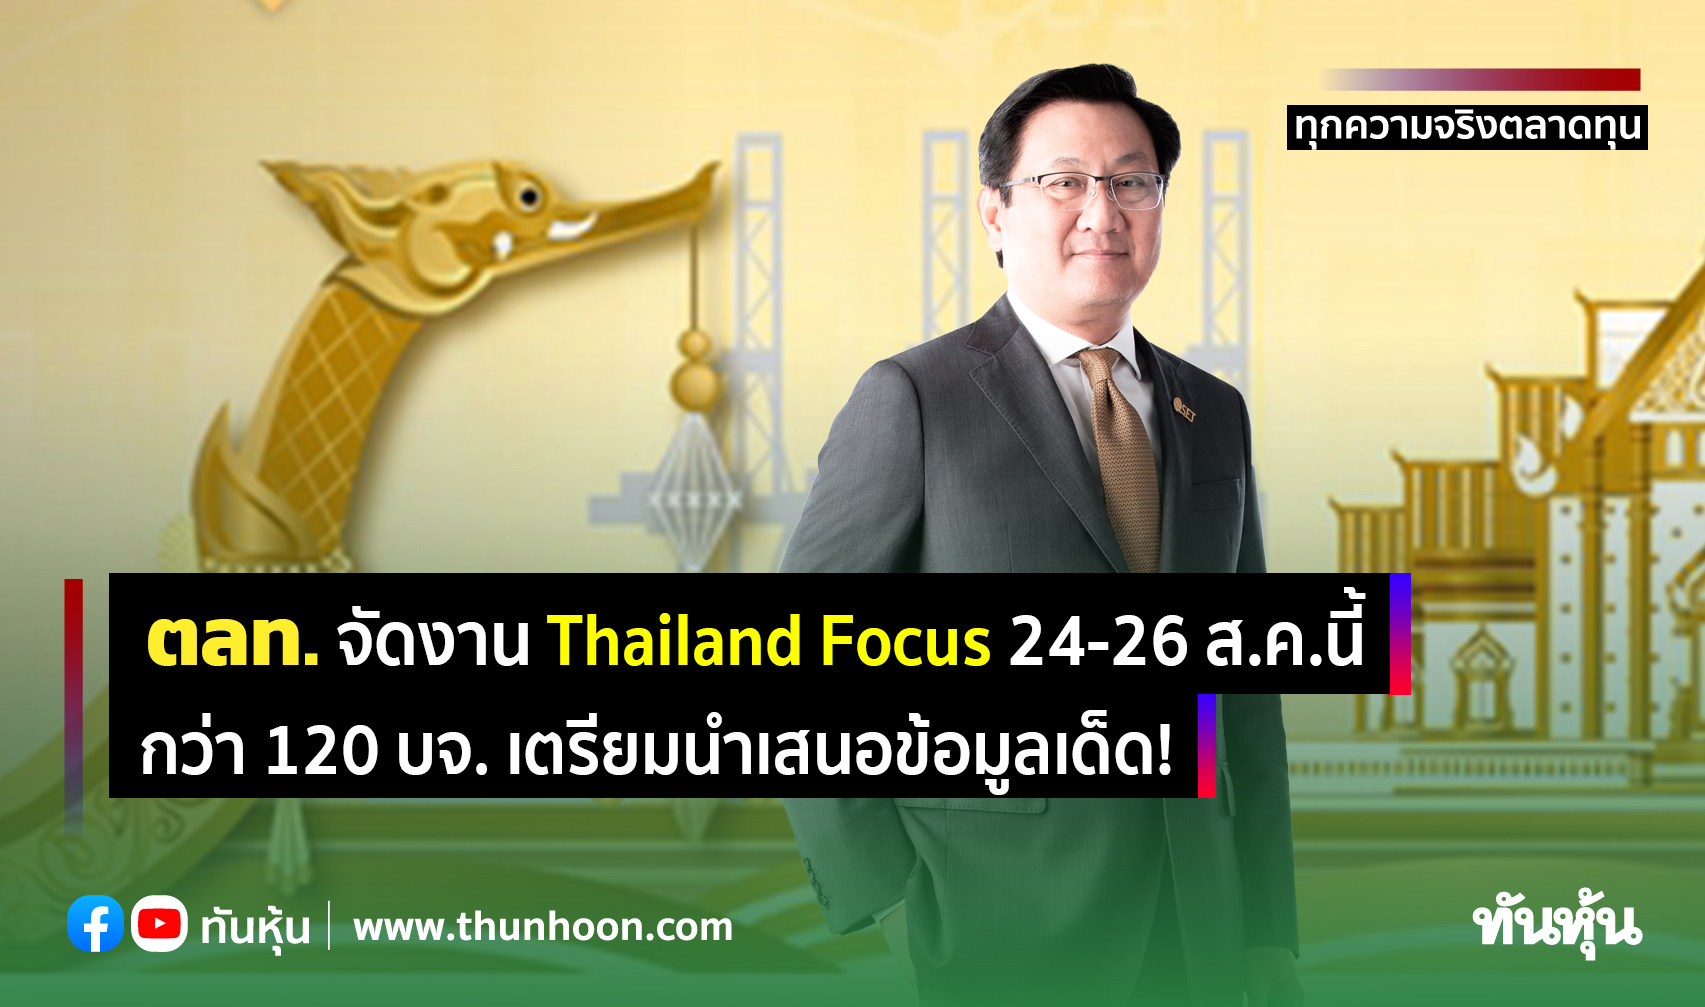 ตลท.จัดงาน Thailand Focus 24-26 ส.ค.นี้ กว่า 120 บจ. เตรียมนำเสนอข้อมูลเด็ด! 